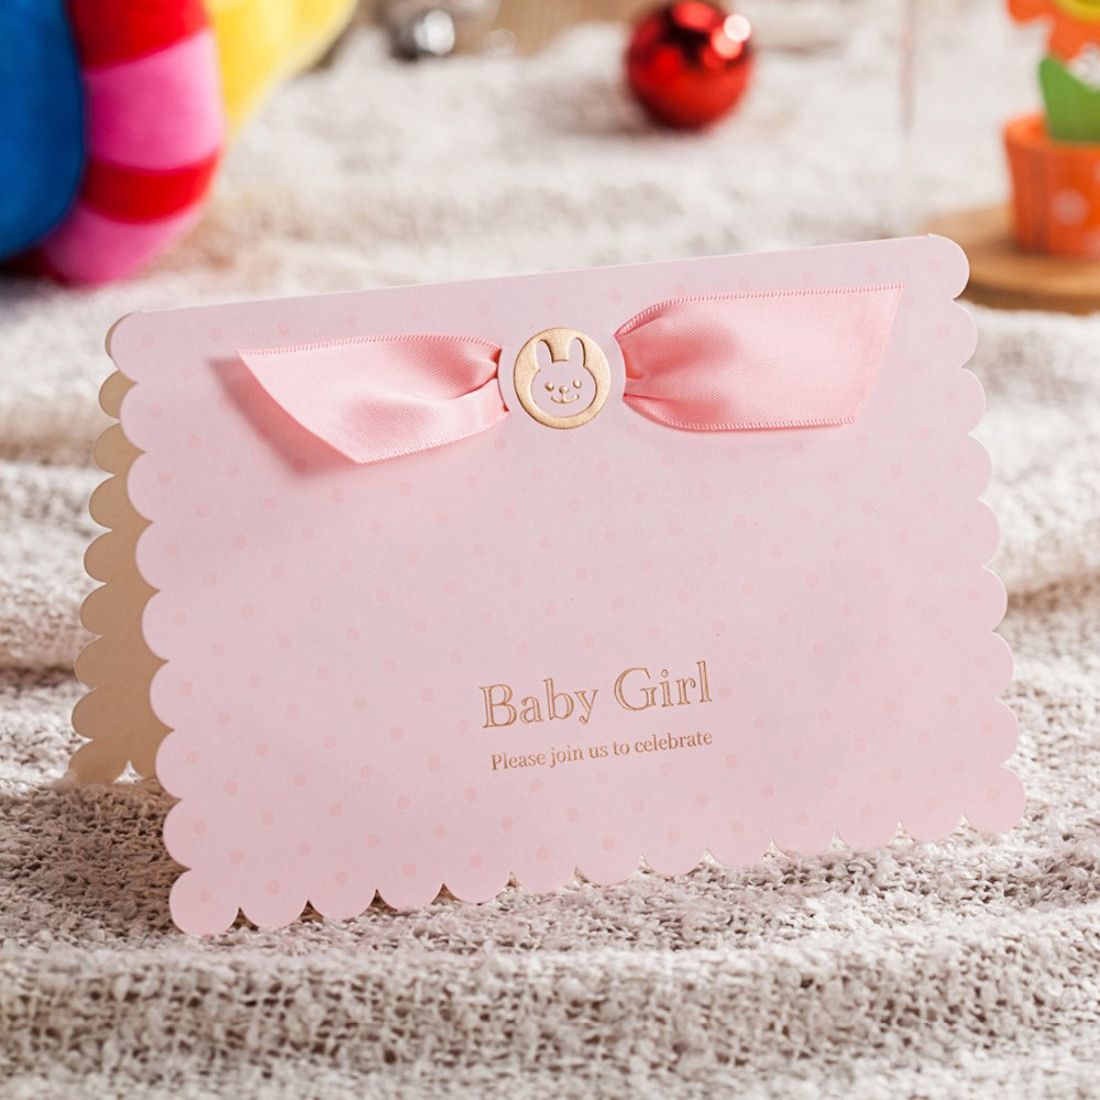 Grosshandel Wishmade Pink Blue Baby Shower Einladungskarten Mit Niedlichen Baby Auto Ladt Card Kit Fur Boy Girl Geburtstag Cw5301 Von Cocobe 1 04 Auf De Dhgate Com Dhgate